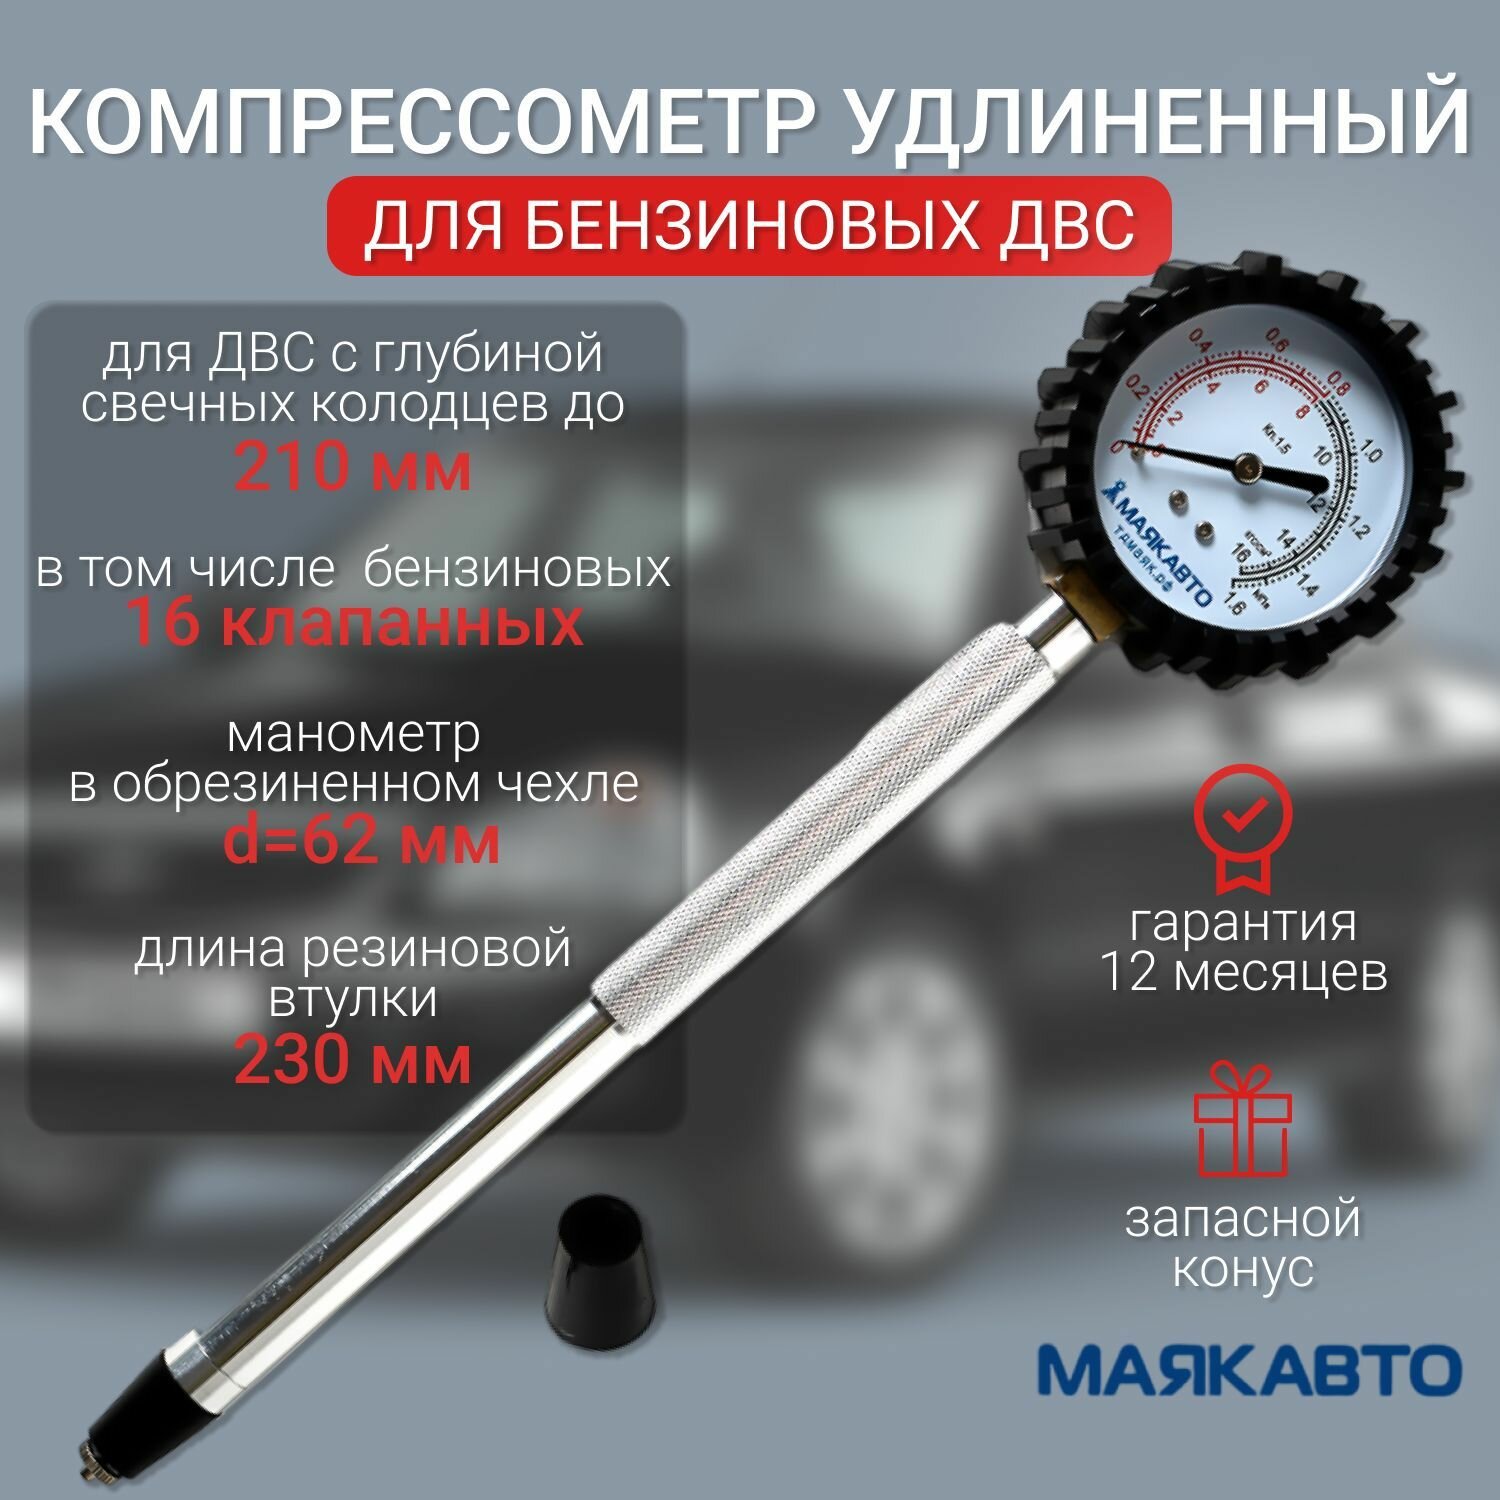 Компрессометр для бензиновых двигателей удлиненный Маяк Авто